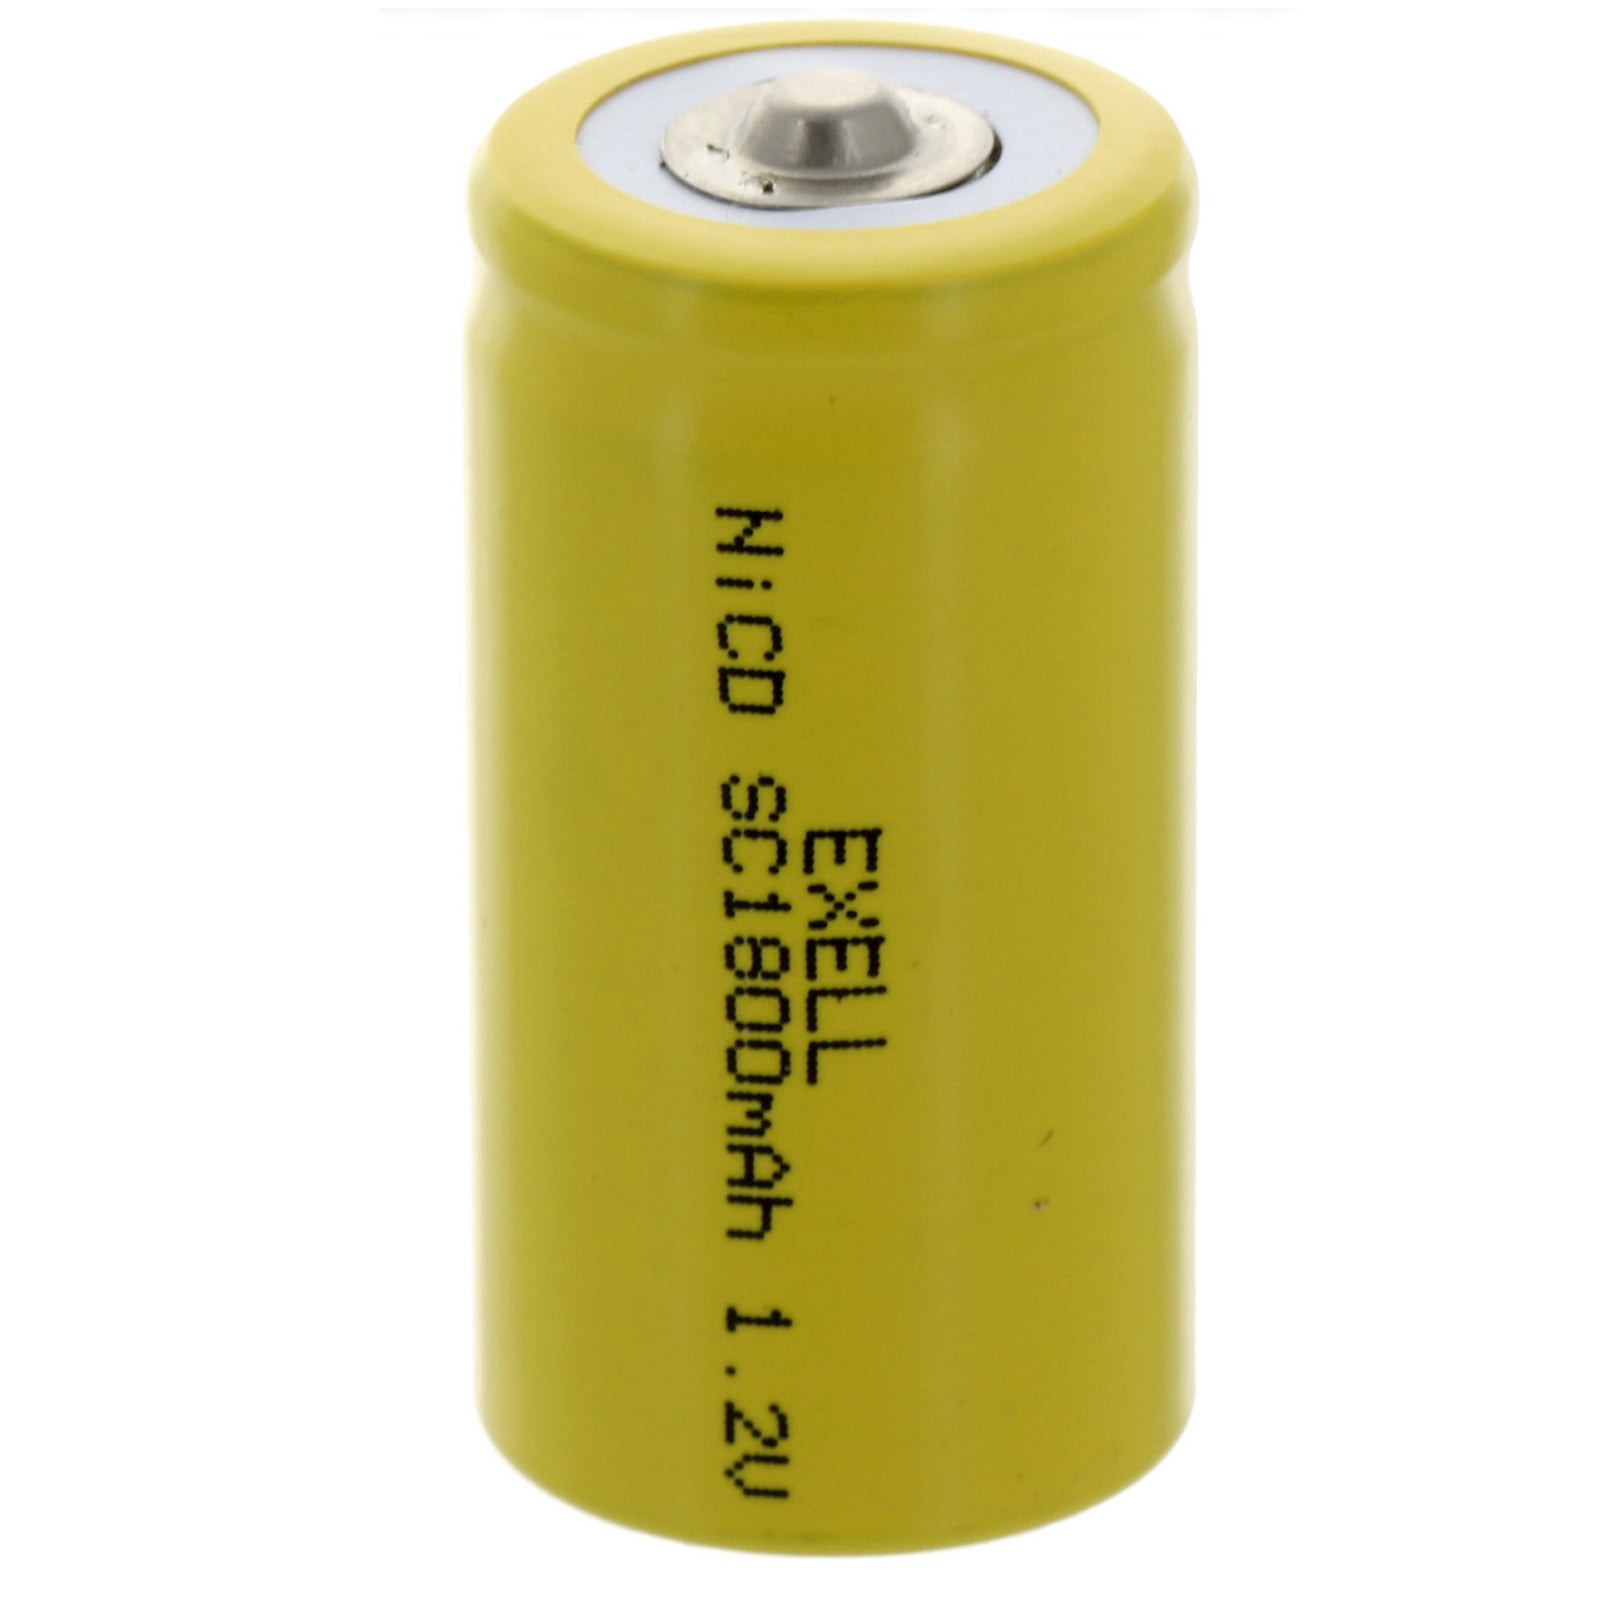 Аккумуляторы 084. SF (super fast) Battery.